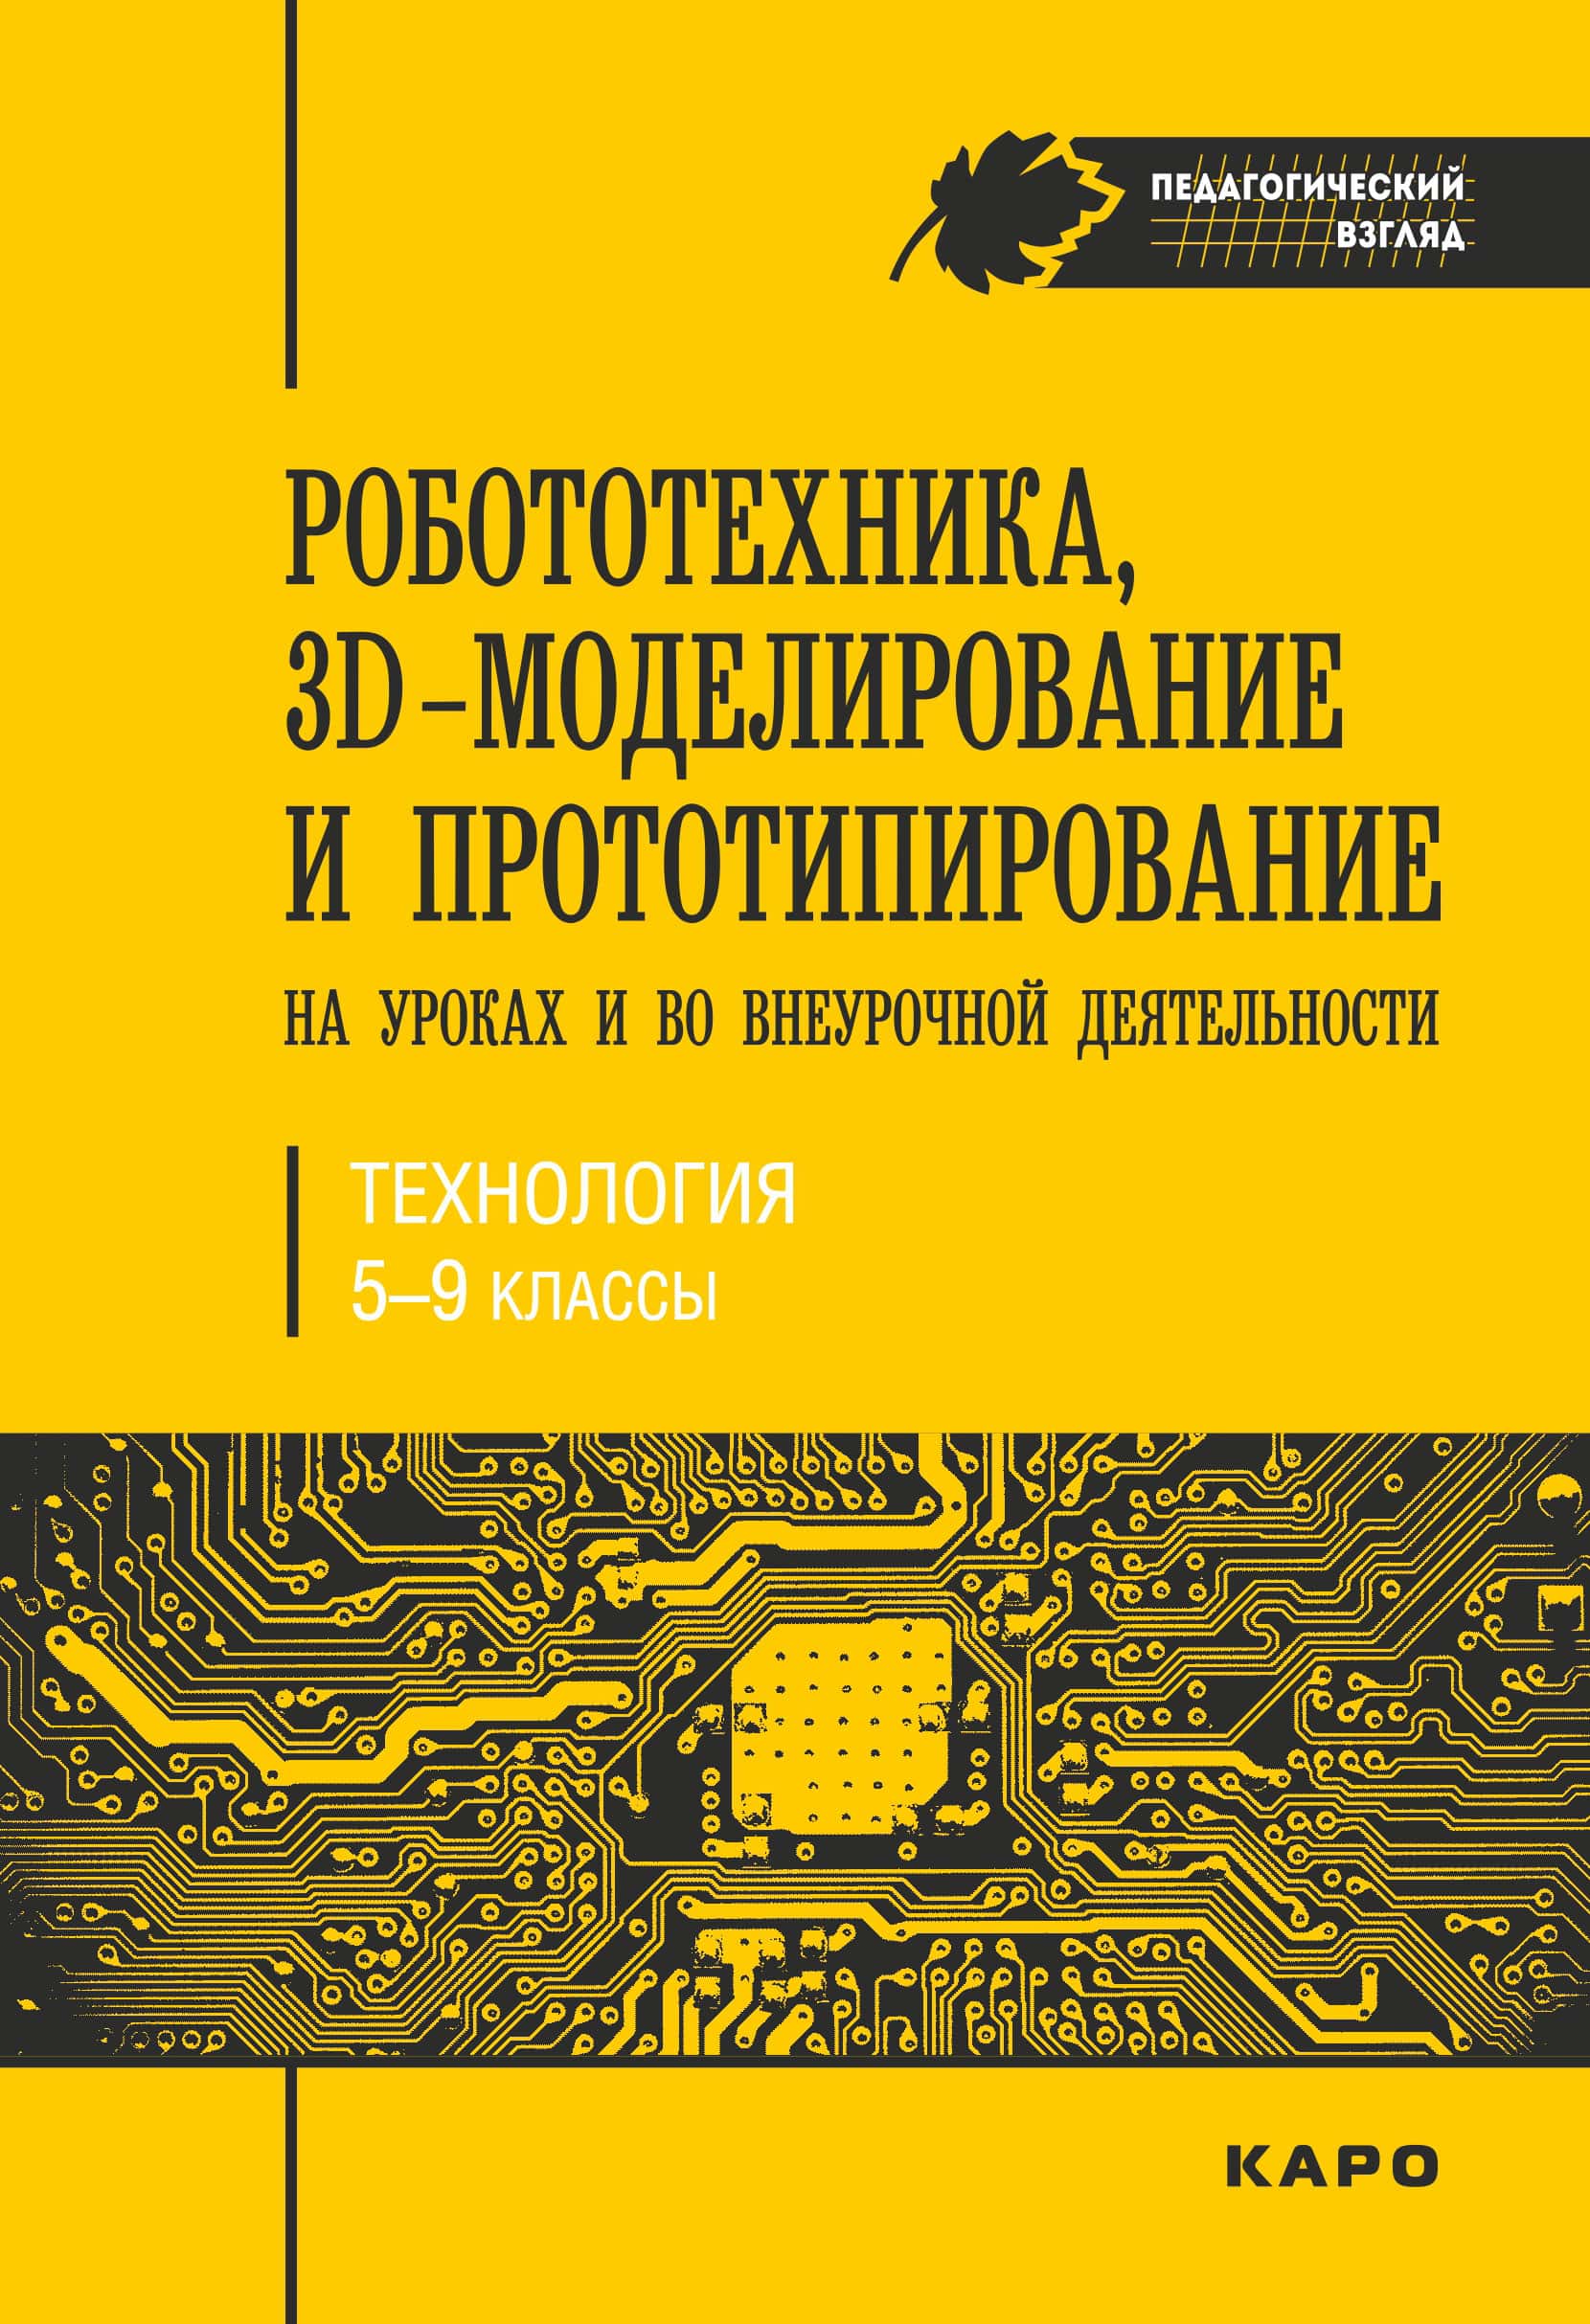 Робототехника, 3D-моделирование, прототипирование, учебник издательства КАРО, 2017 